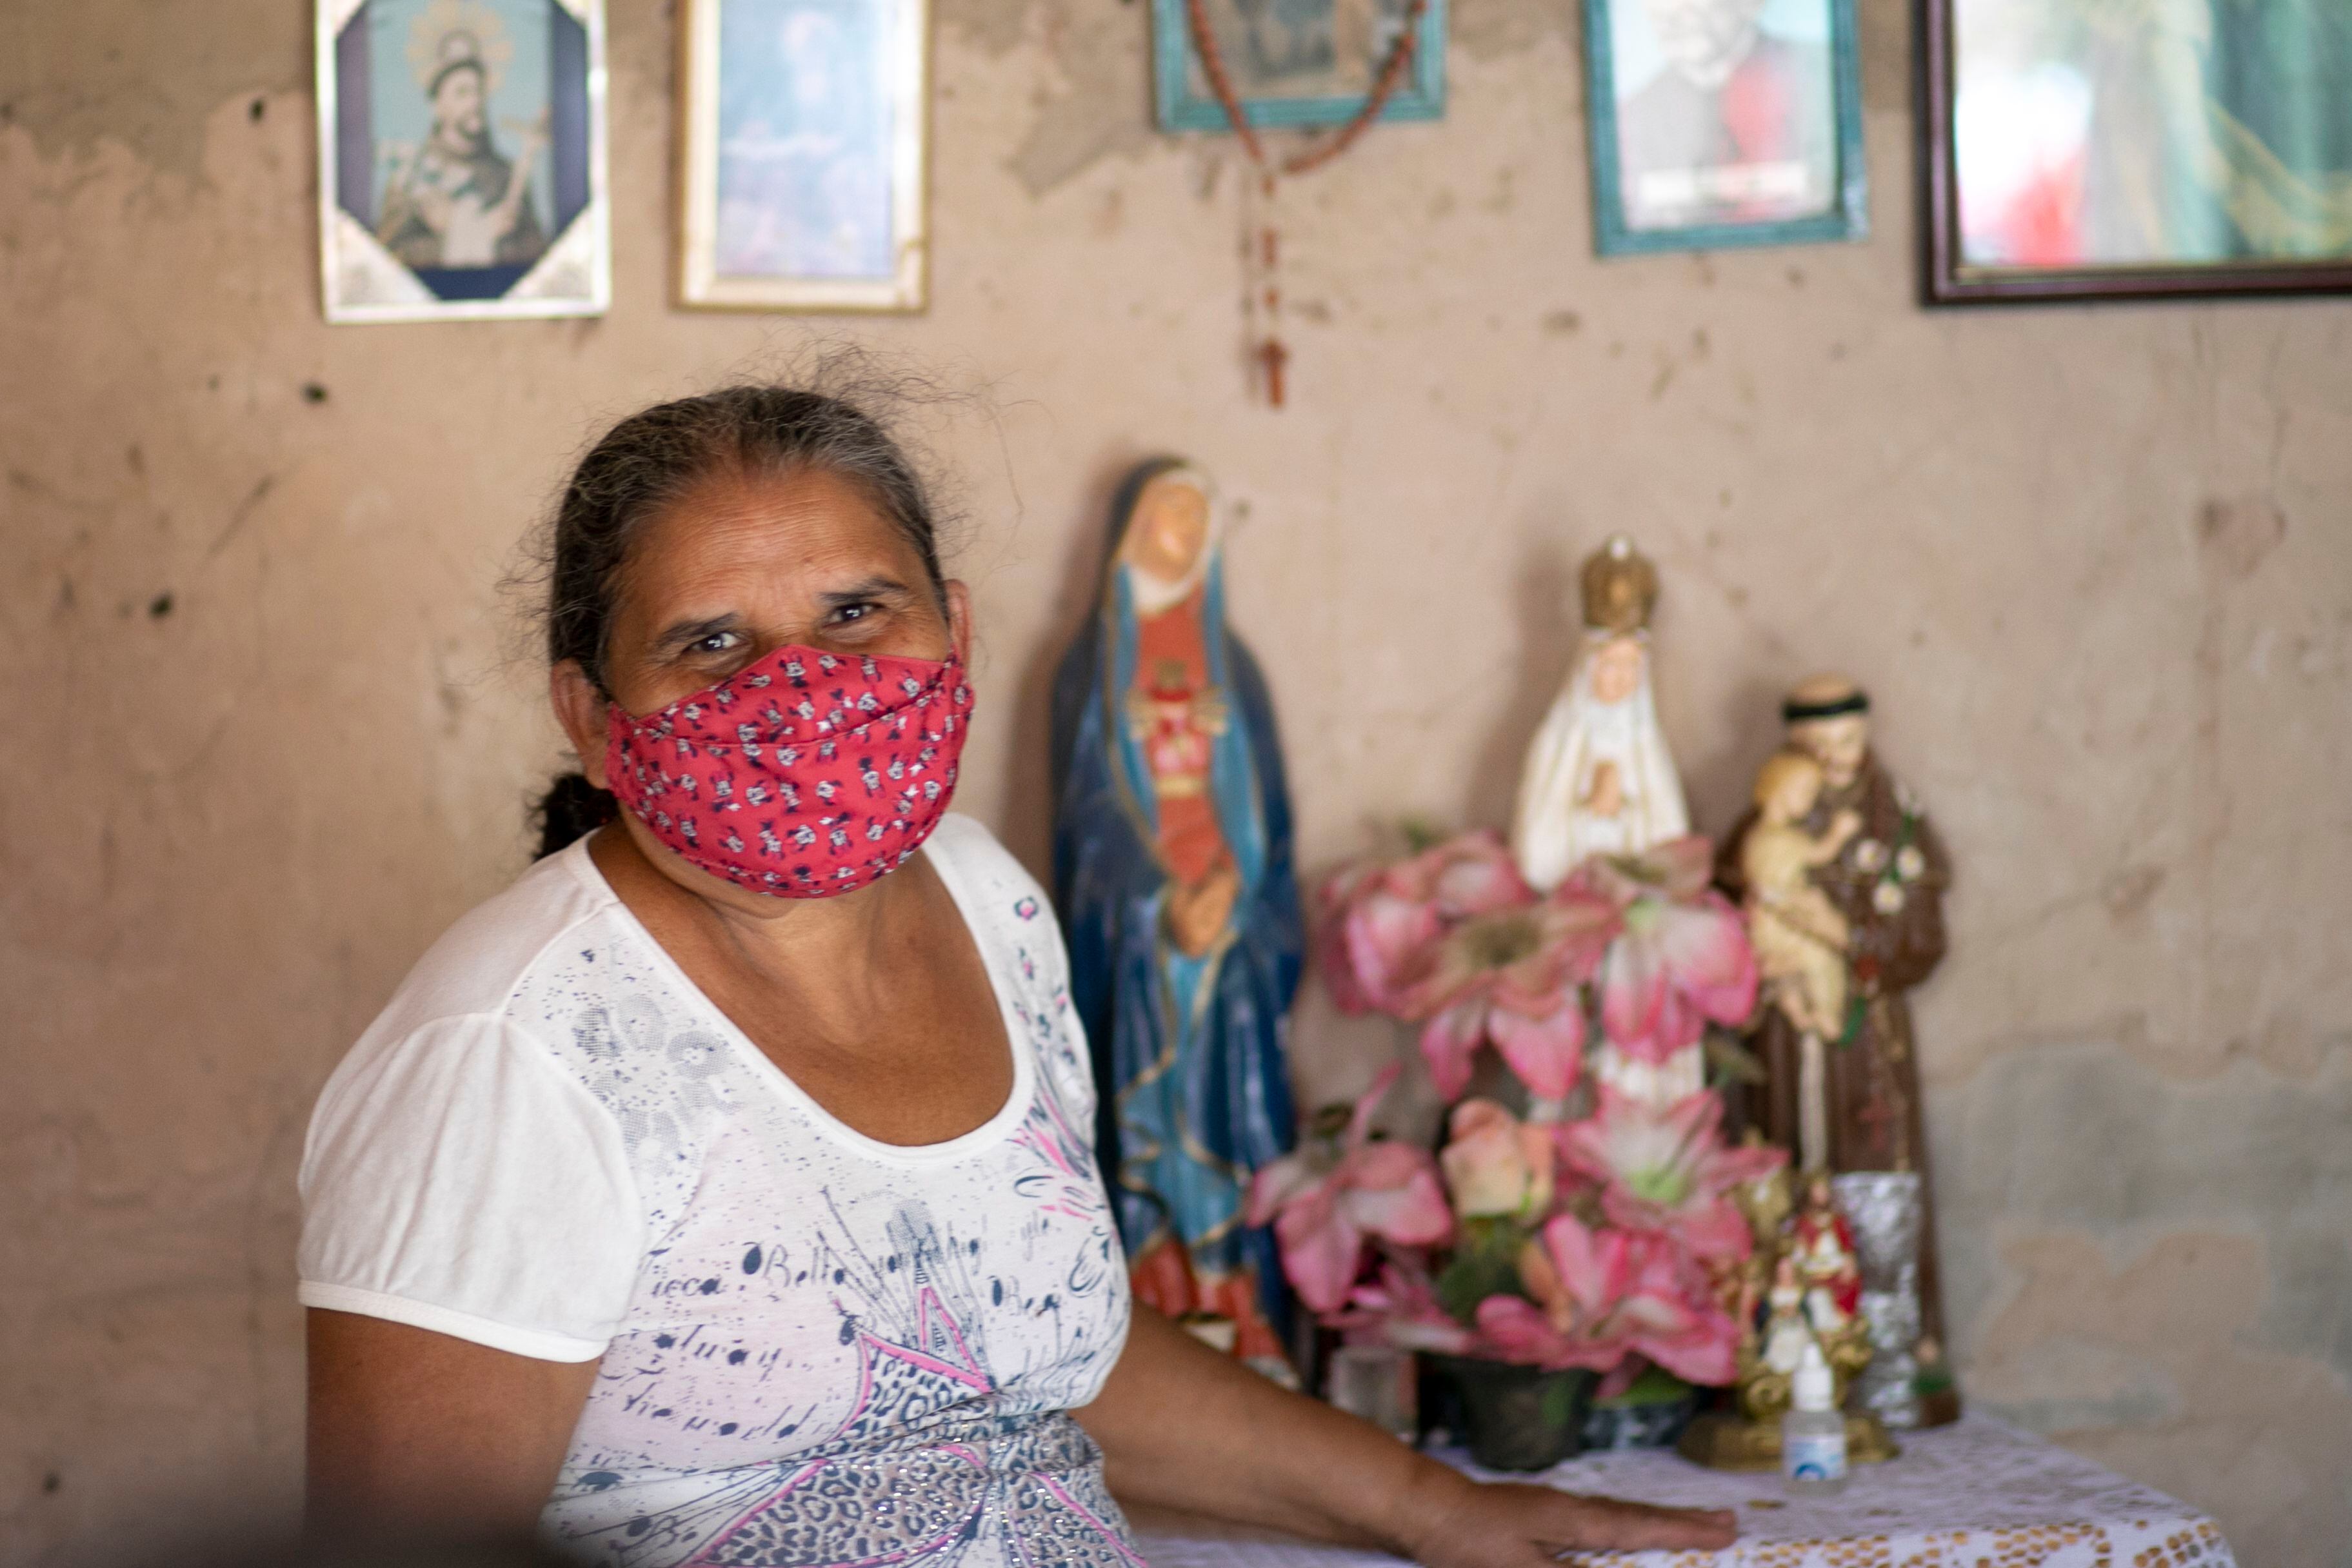 Maria de Fátima vive com 250 reais por mês em Juazeiro do Norte.